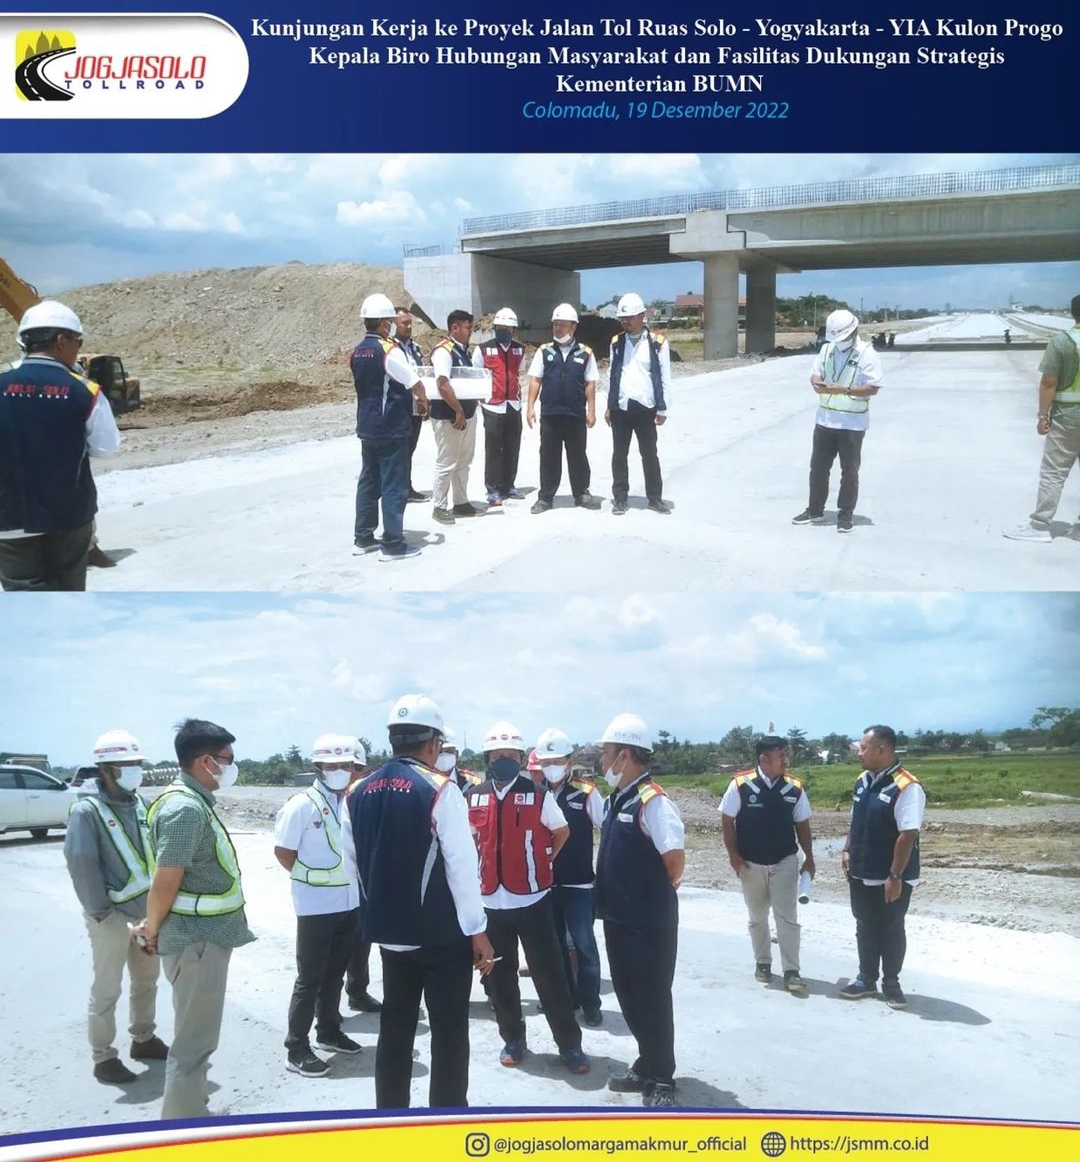 Kunjungan Kerja Ke Proyek Tol Solo-Yogjakarta-YIA Kulon Progo oleh Kepala Biro Hubungan masyarakat dan fasilitas Dukungan Strategis Kementrian BUMN